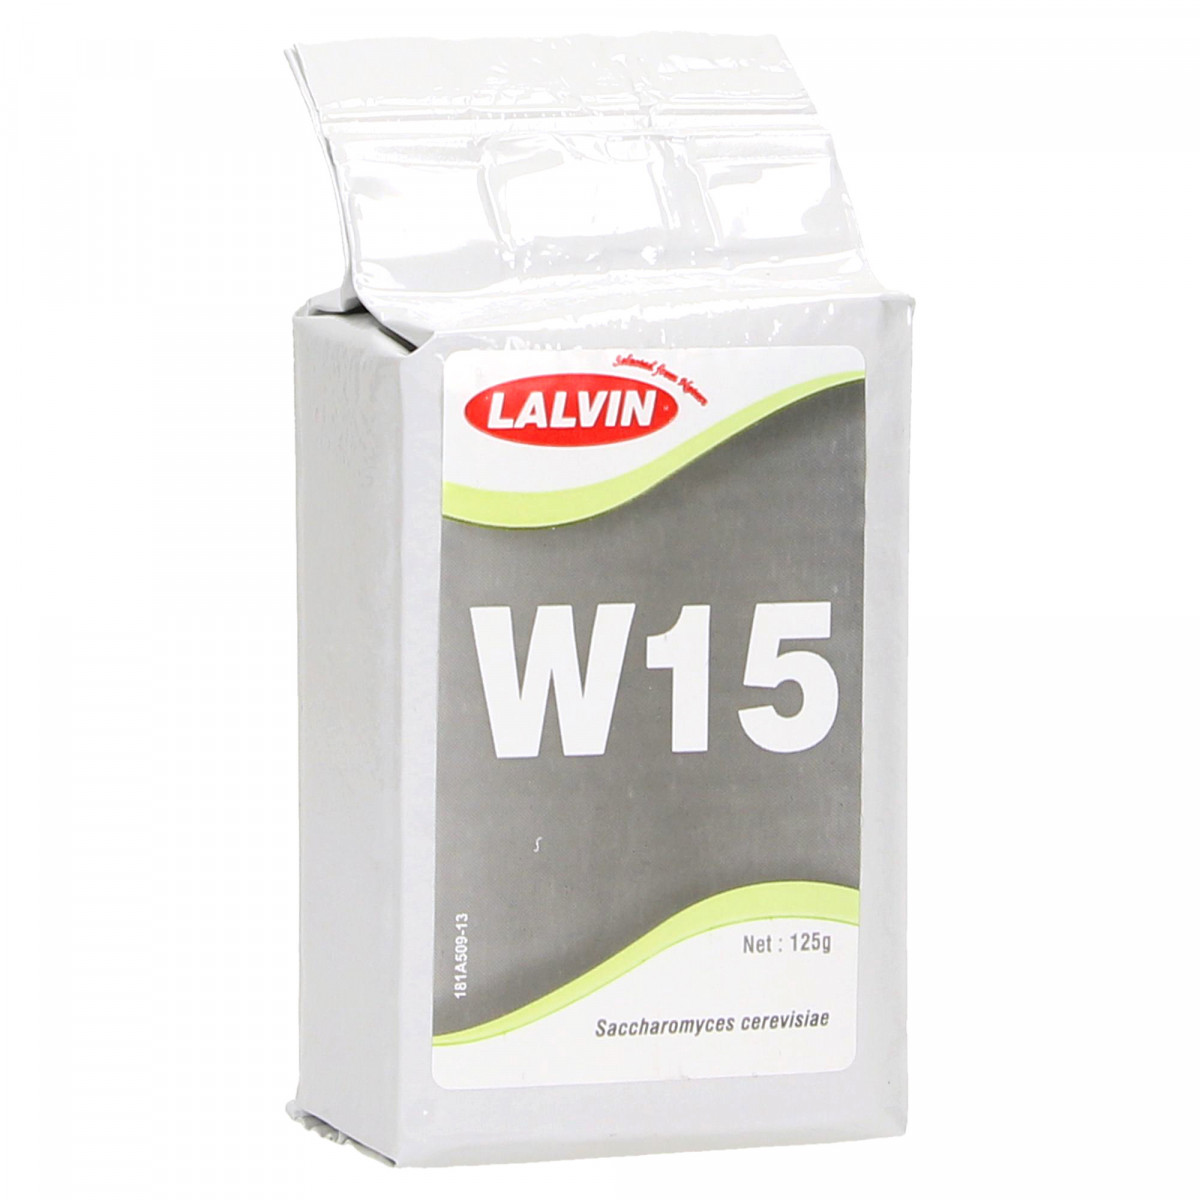 Dried yeast W15™ - Lalvin™ - 125 g